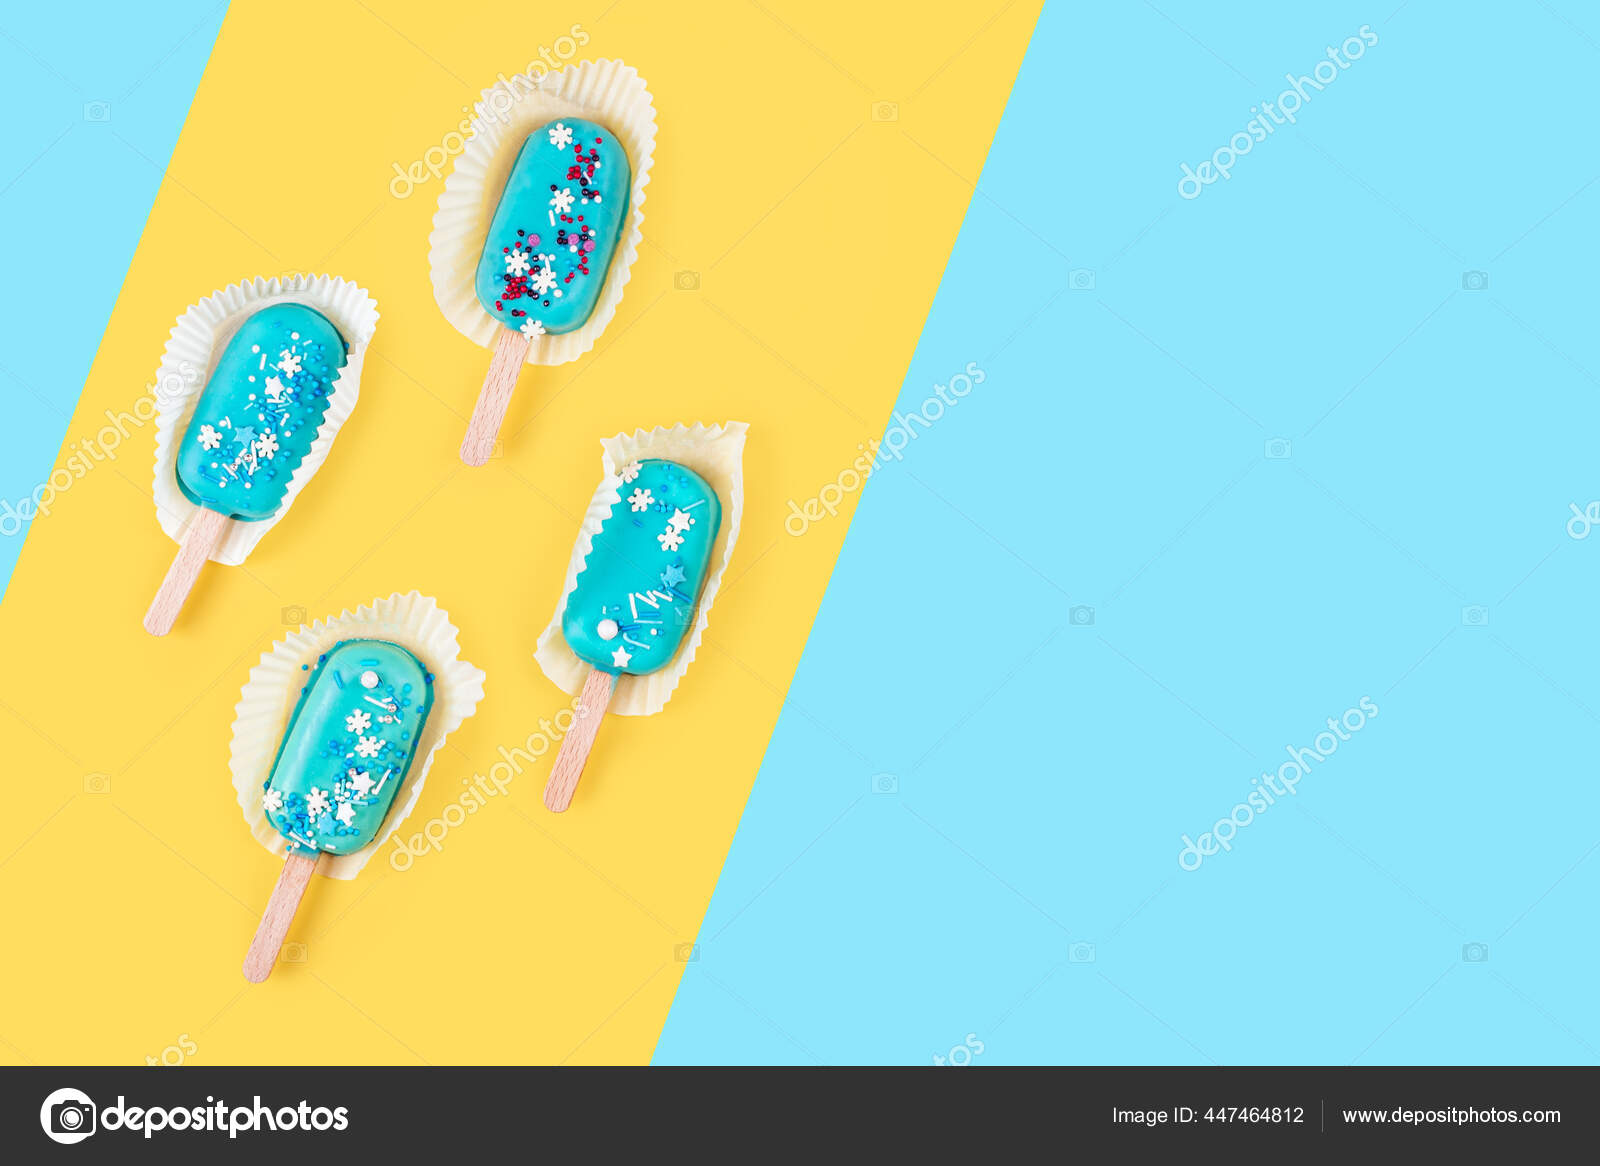 黄色と青のパステルカラーの背景にブルーミントアイスのアイスポプシクル おいしいとスティック上のさわやかなアイスクリーム 最小限の夏のコンセプト フラットレイアウト テキスト用のコピースペース ストック写真 C Magryt Artur